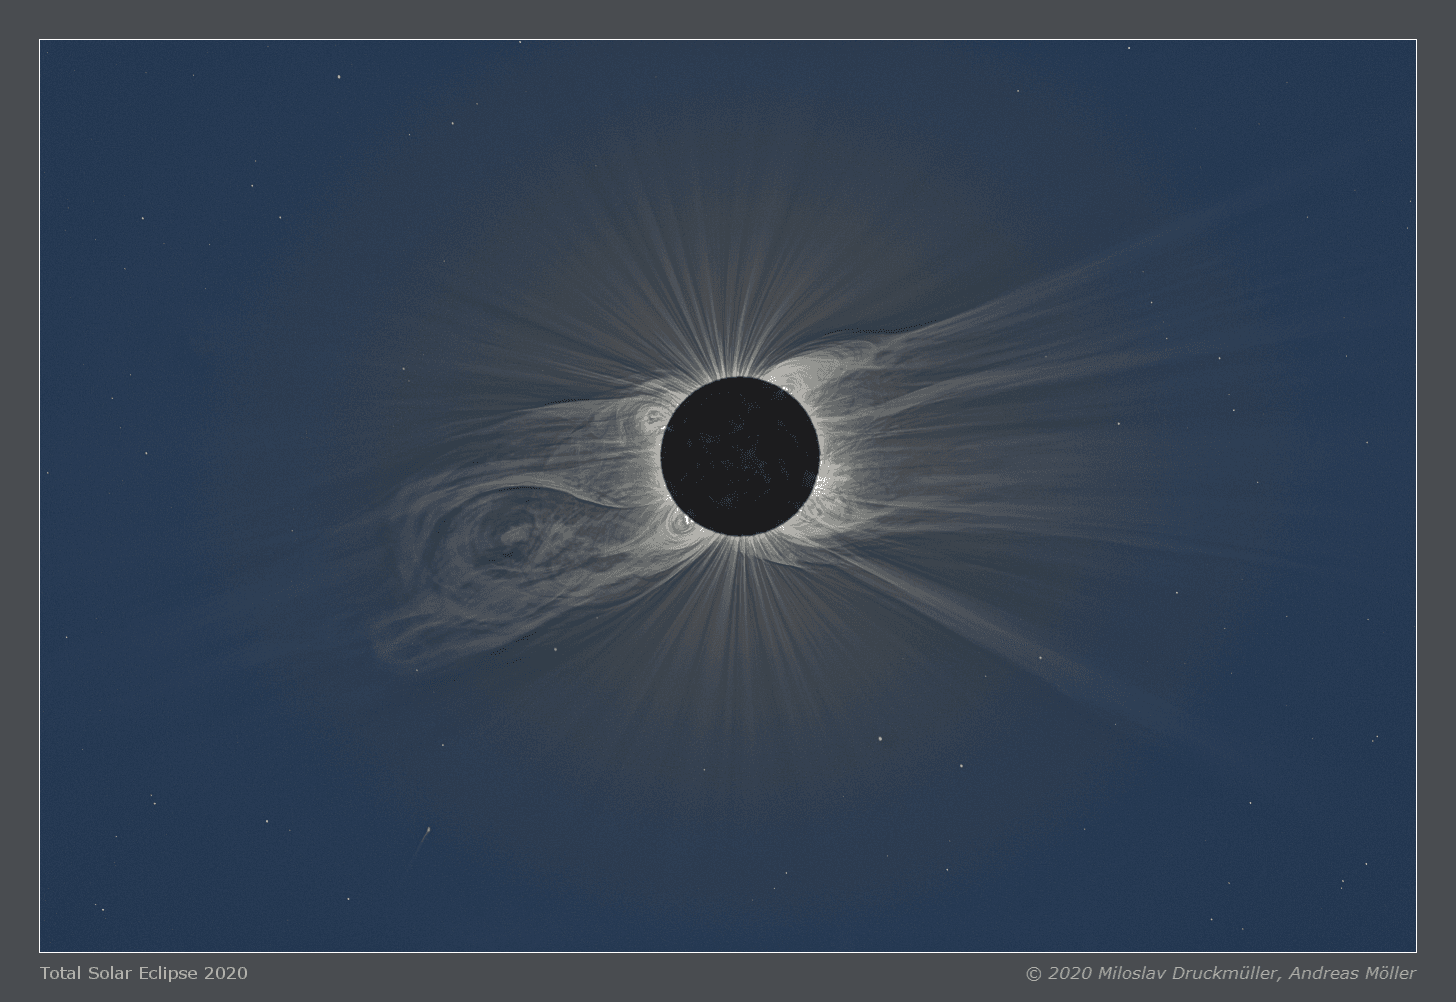 صورة مركّبة للكسوف الكلّي للشمس عام 2020، تكشف عن السطح القمري الشاحب والنجوم الخافتة في الخلفية، جنباً إلى جنب مع بروزات بحجم الكواكب على حافة الشمس، مع انبعاث كتليٍّ إكليليٍّ هائل، إضافة إلى هياكل إكليلية عارمة تكون عادةً غير مرئيّة في وهج الشمس، و مذنّب راعٍ للشمس من عائلة مذنبات كروز أسفل يسار الصورة.